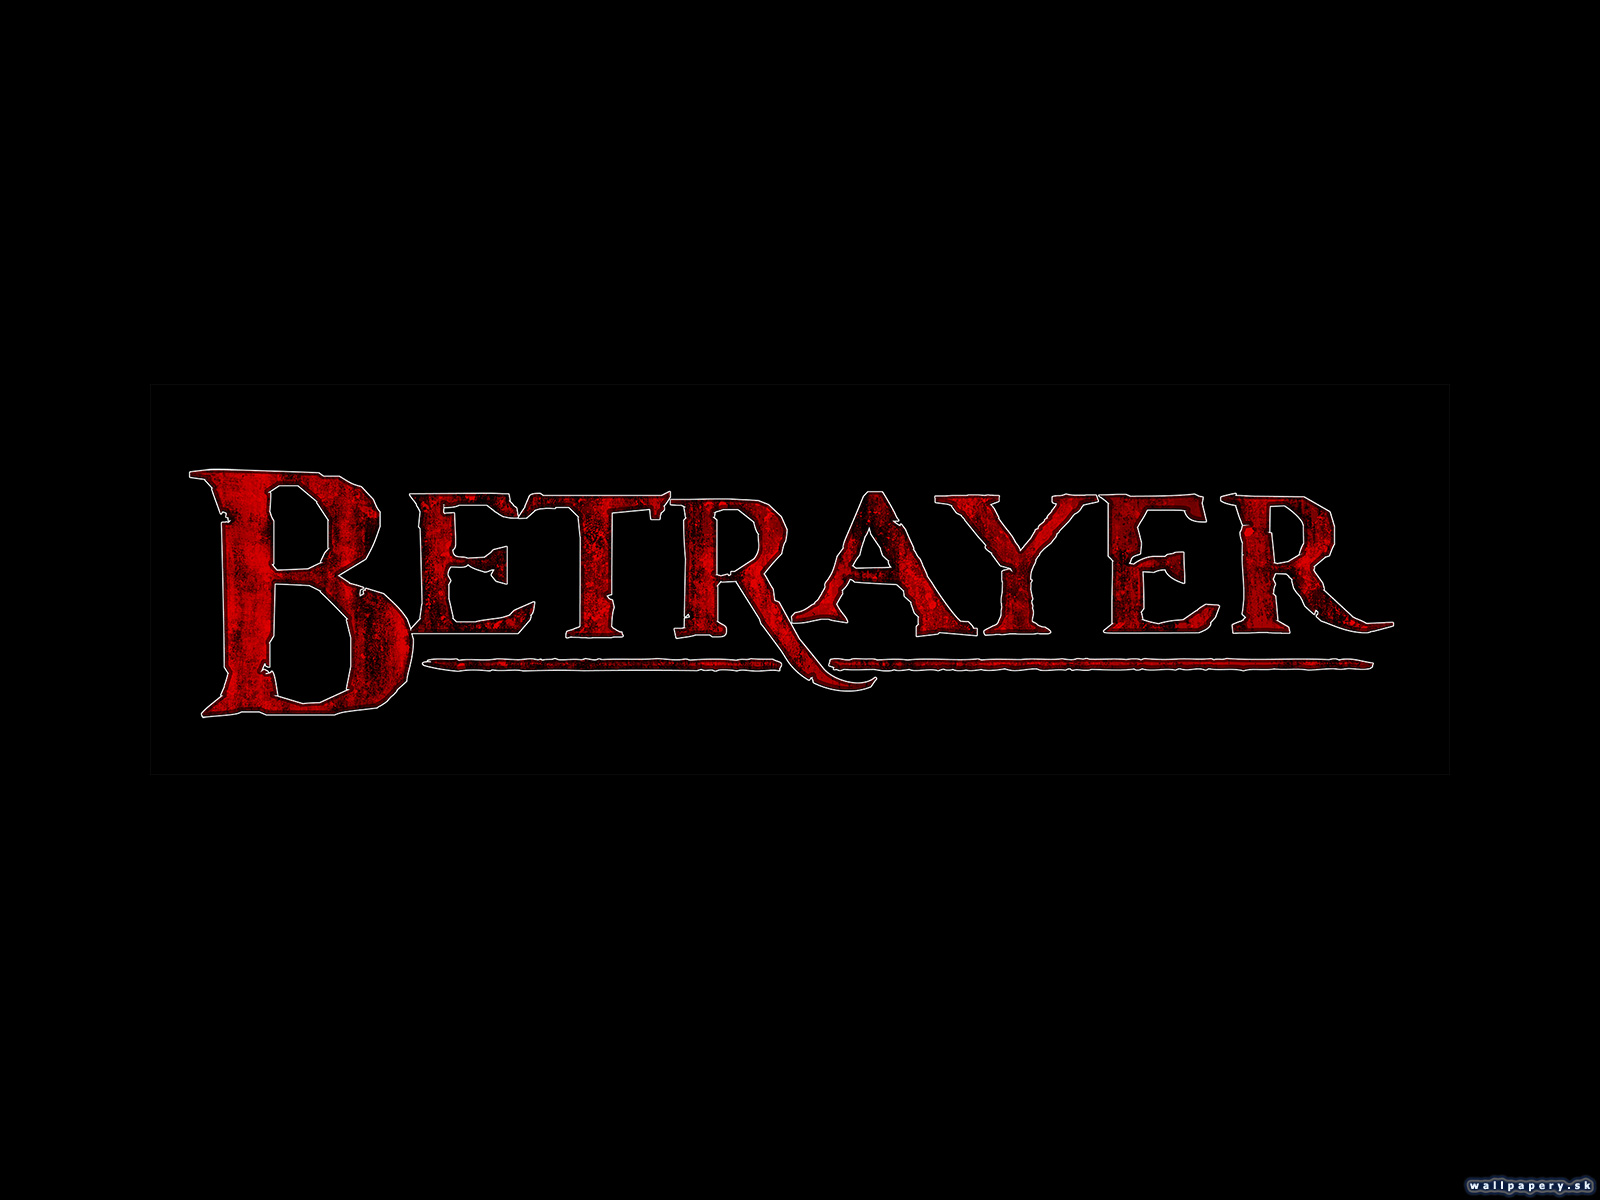 Betrayer - wallpaper 2